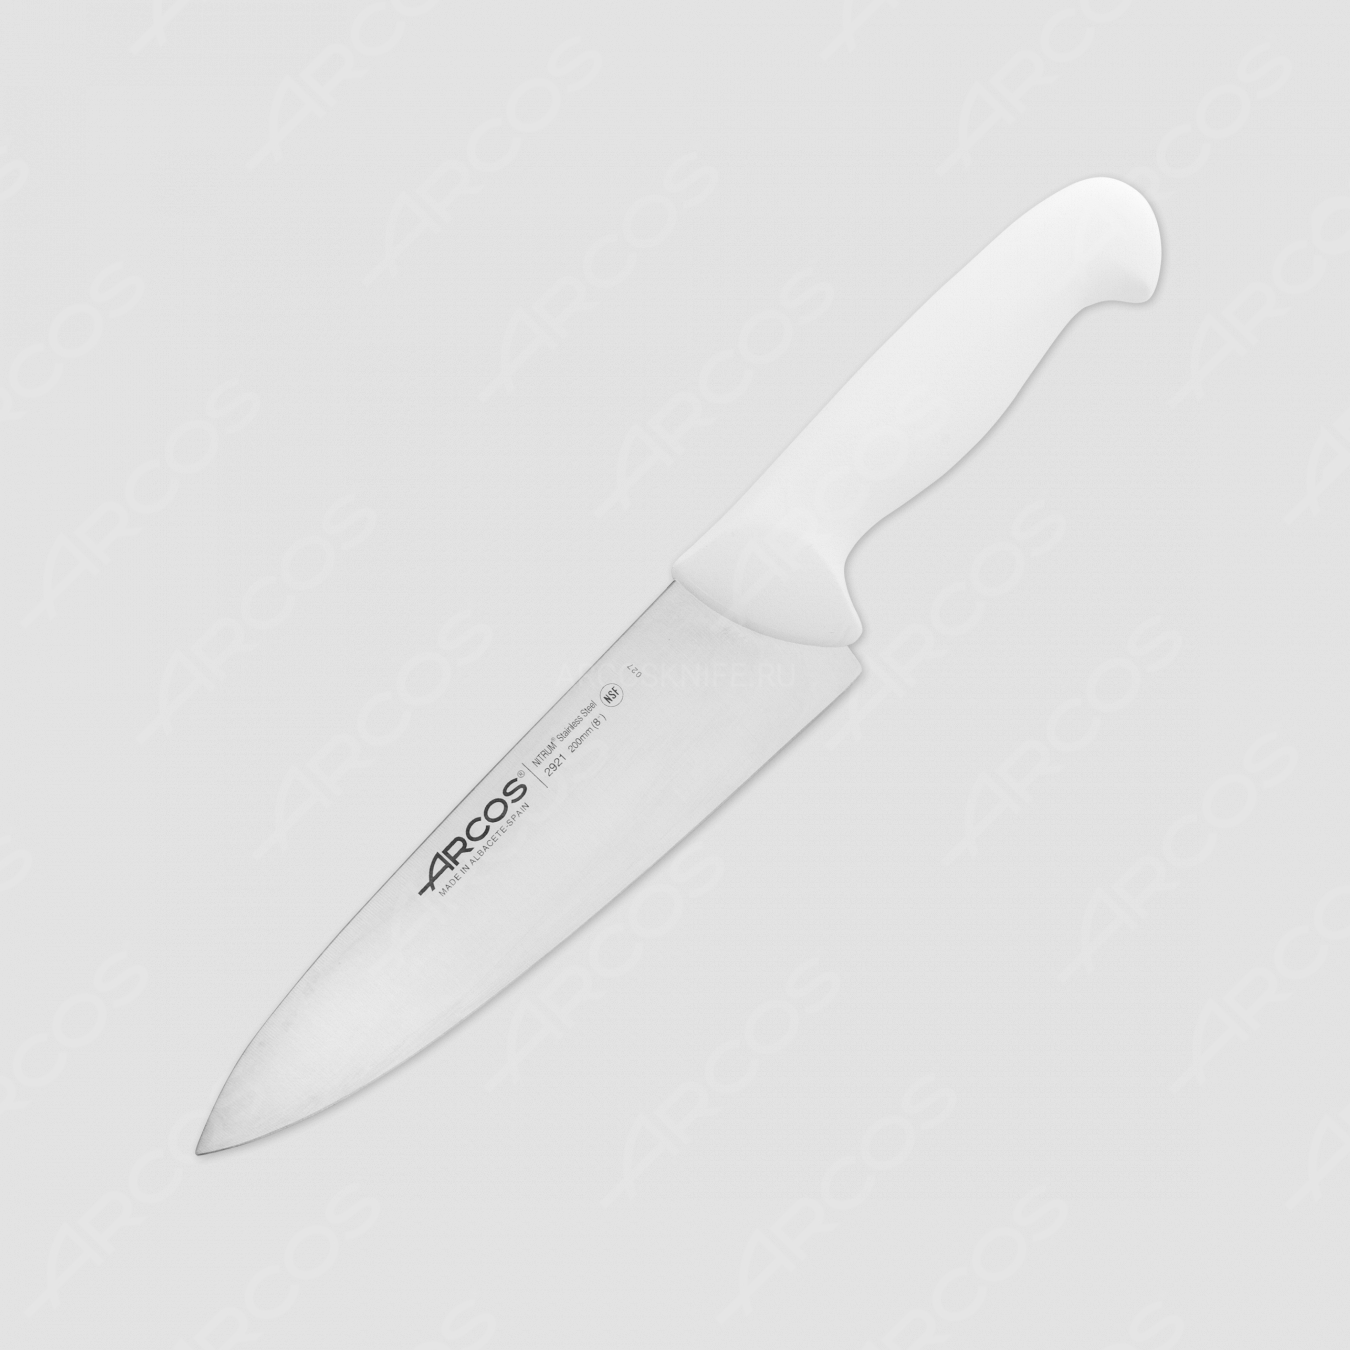 Профессиональный поварской кухонный нож 20 см, рукоять - белая, серия 2900, ARCOS, Испания